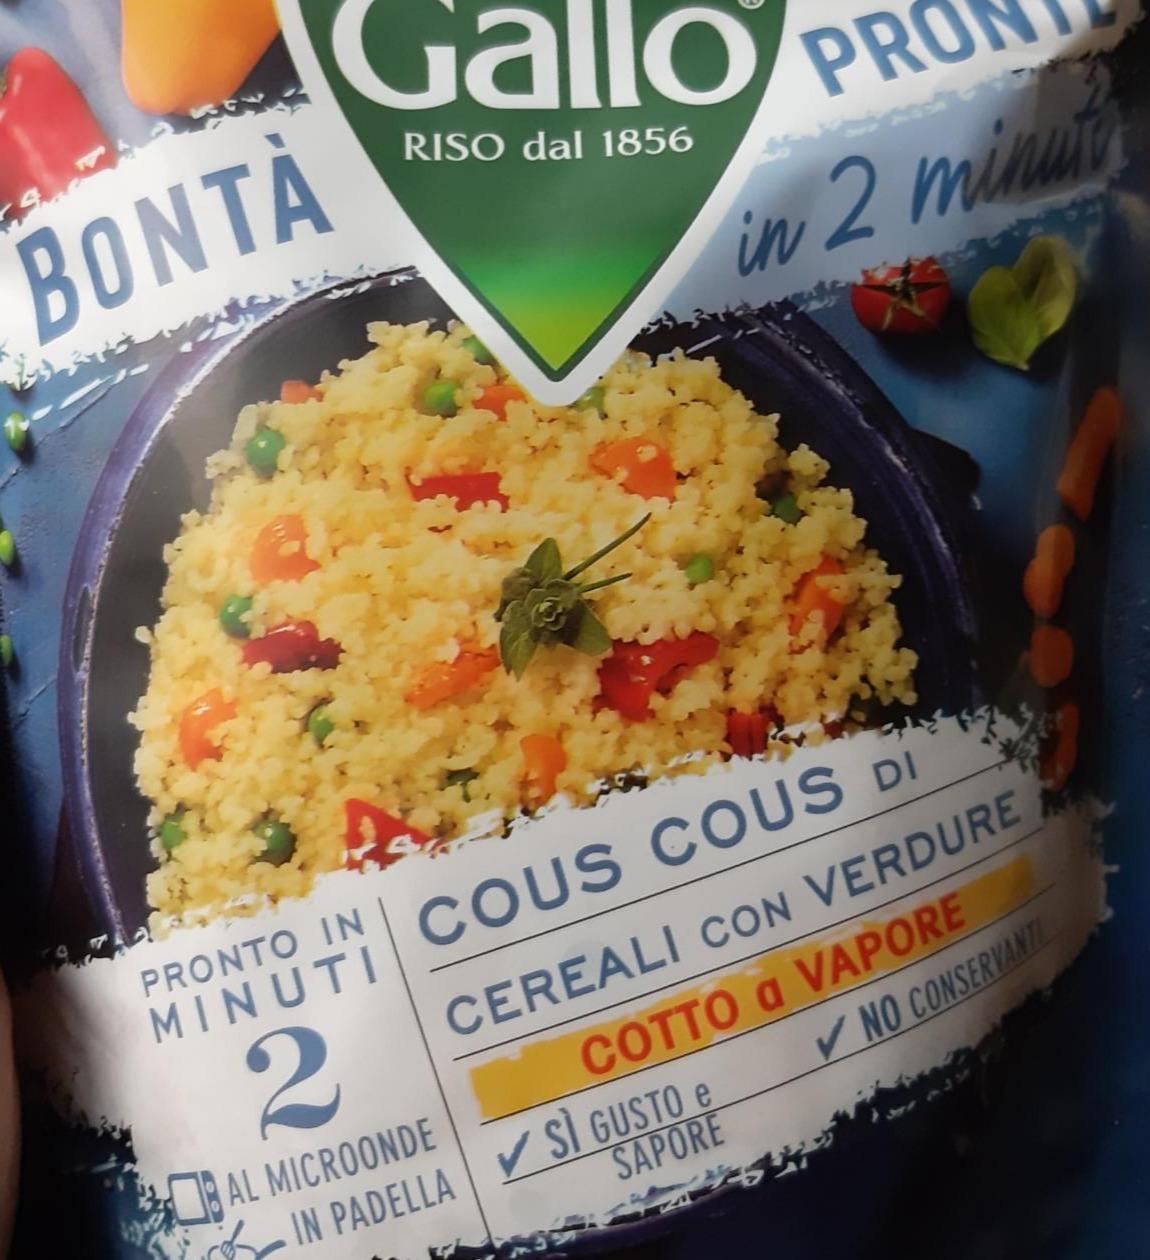 Фото - Bontà Pronte Cous Cous Cereals Vegetables Gallo